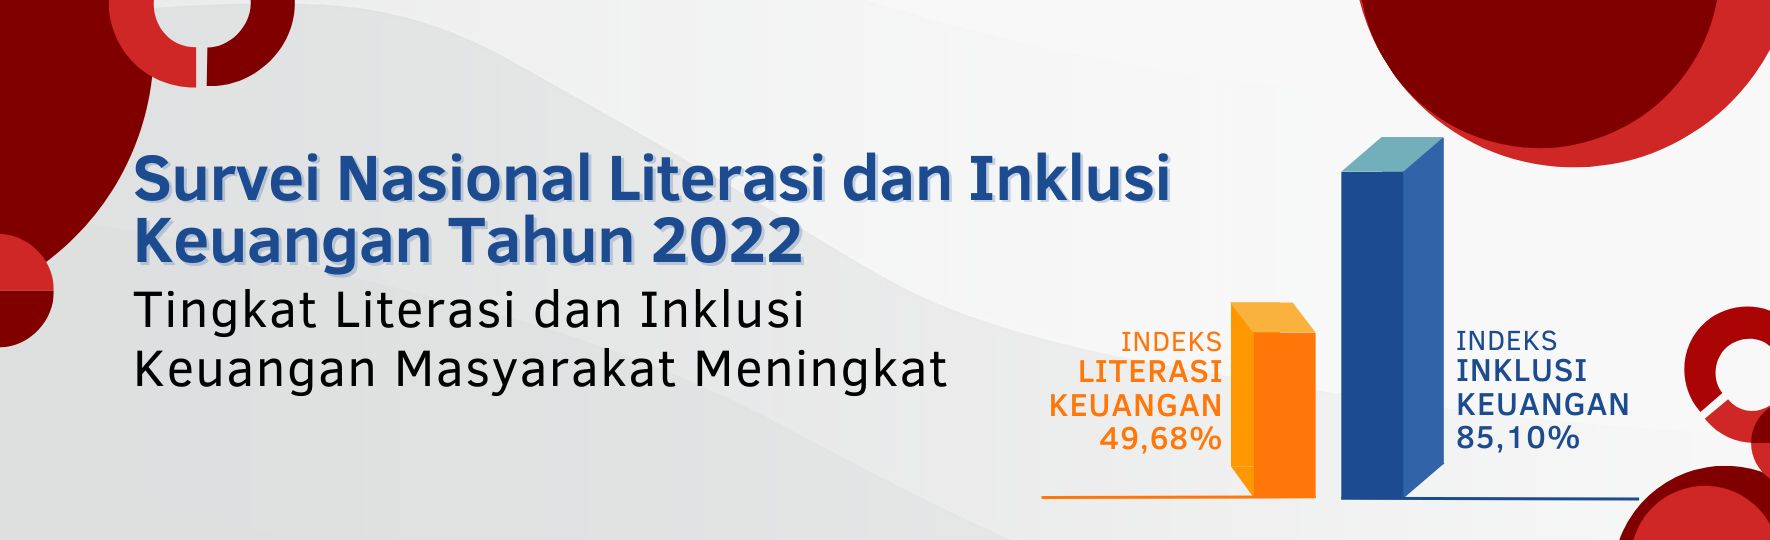 Survei Nasional Literasi dan Inklusi Keuangan 2022